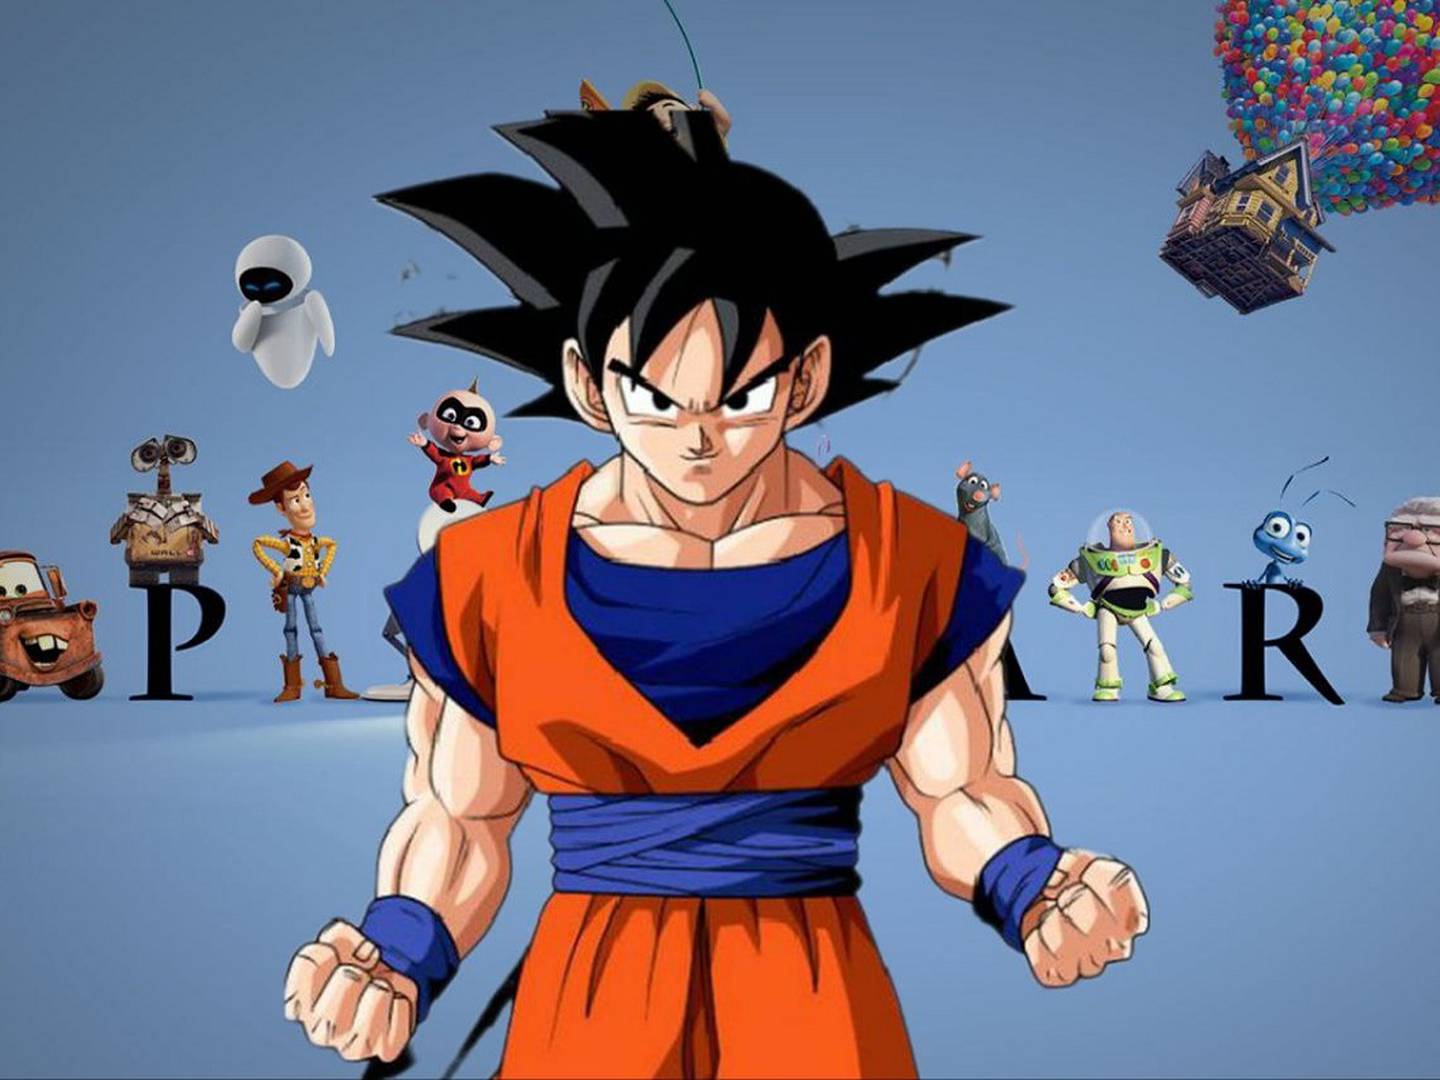 Personagens de Dragon Ball são recriados com ajuda de IA em estilo de filme  da Disney 